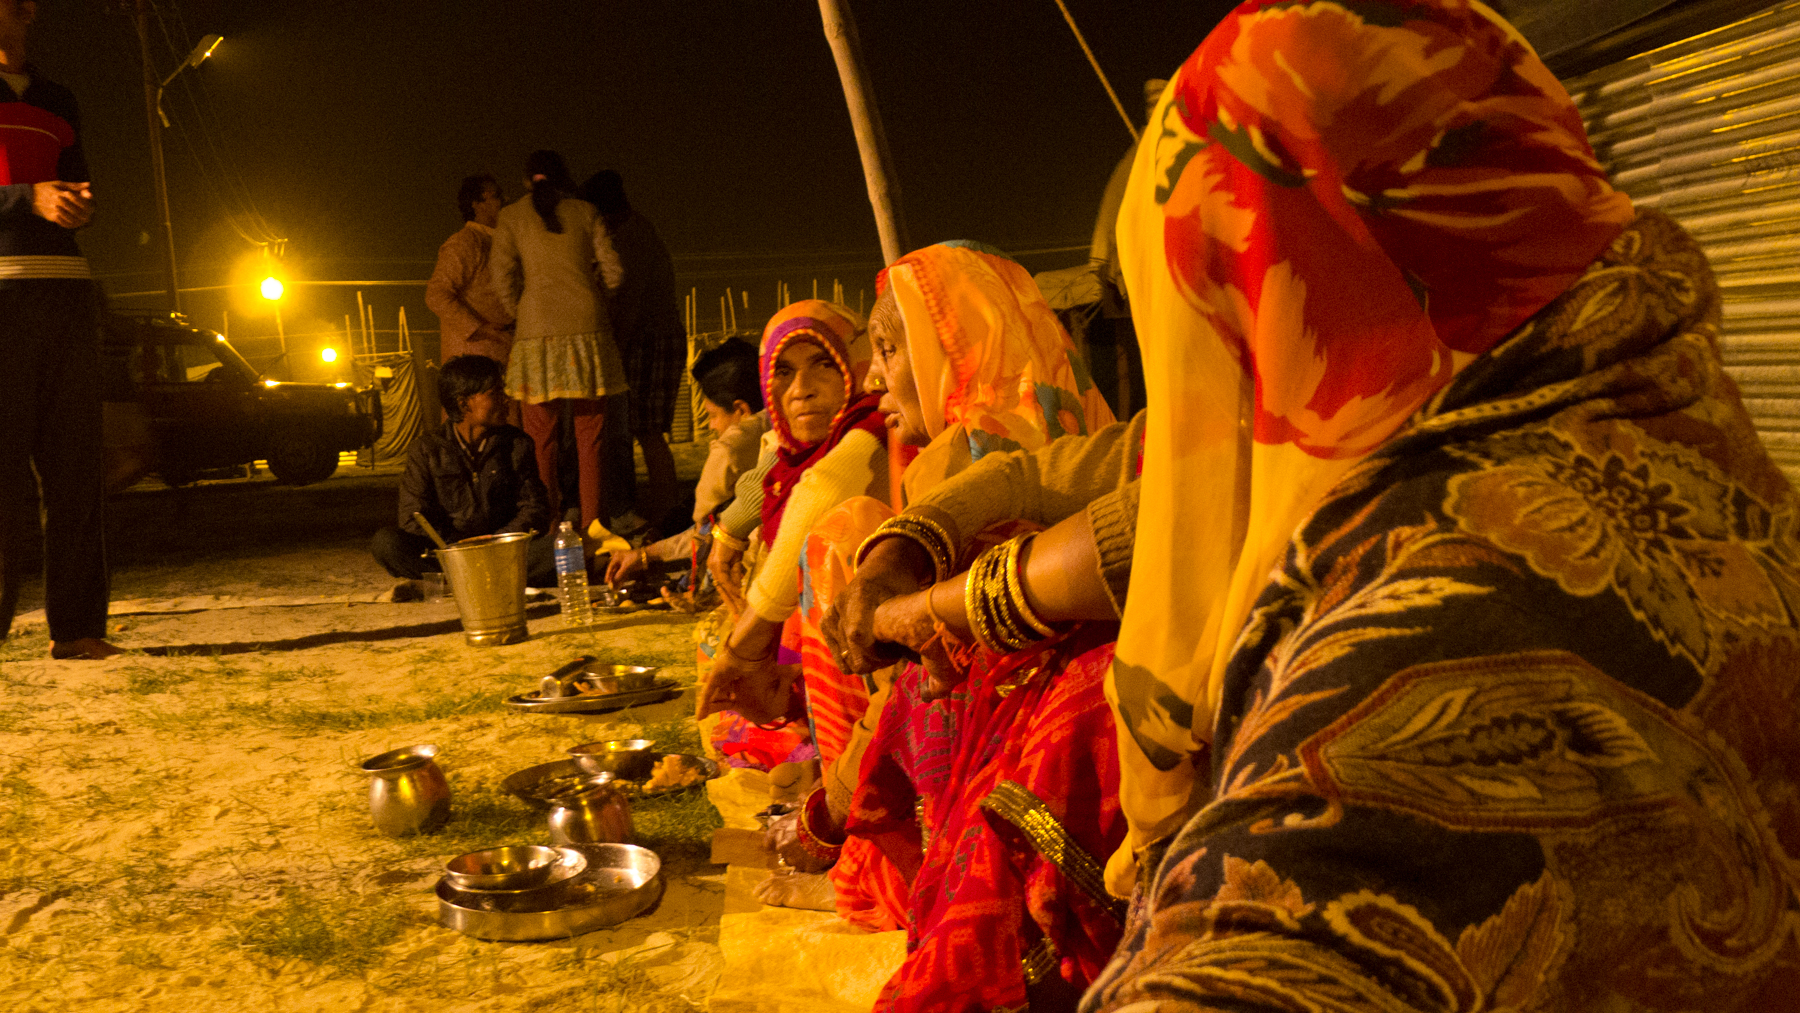 Le repas du soir, en commun, avec nos hôtes de Bundi. On mange par terre tandis que d'autres font le service.